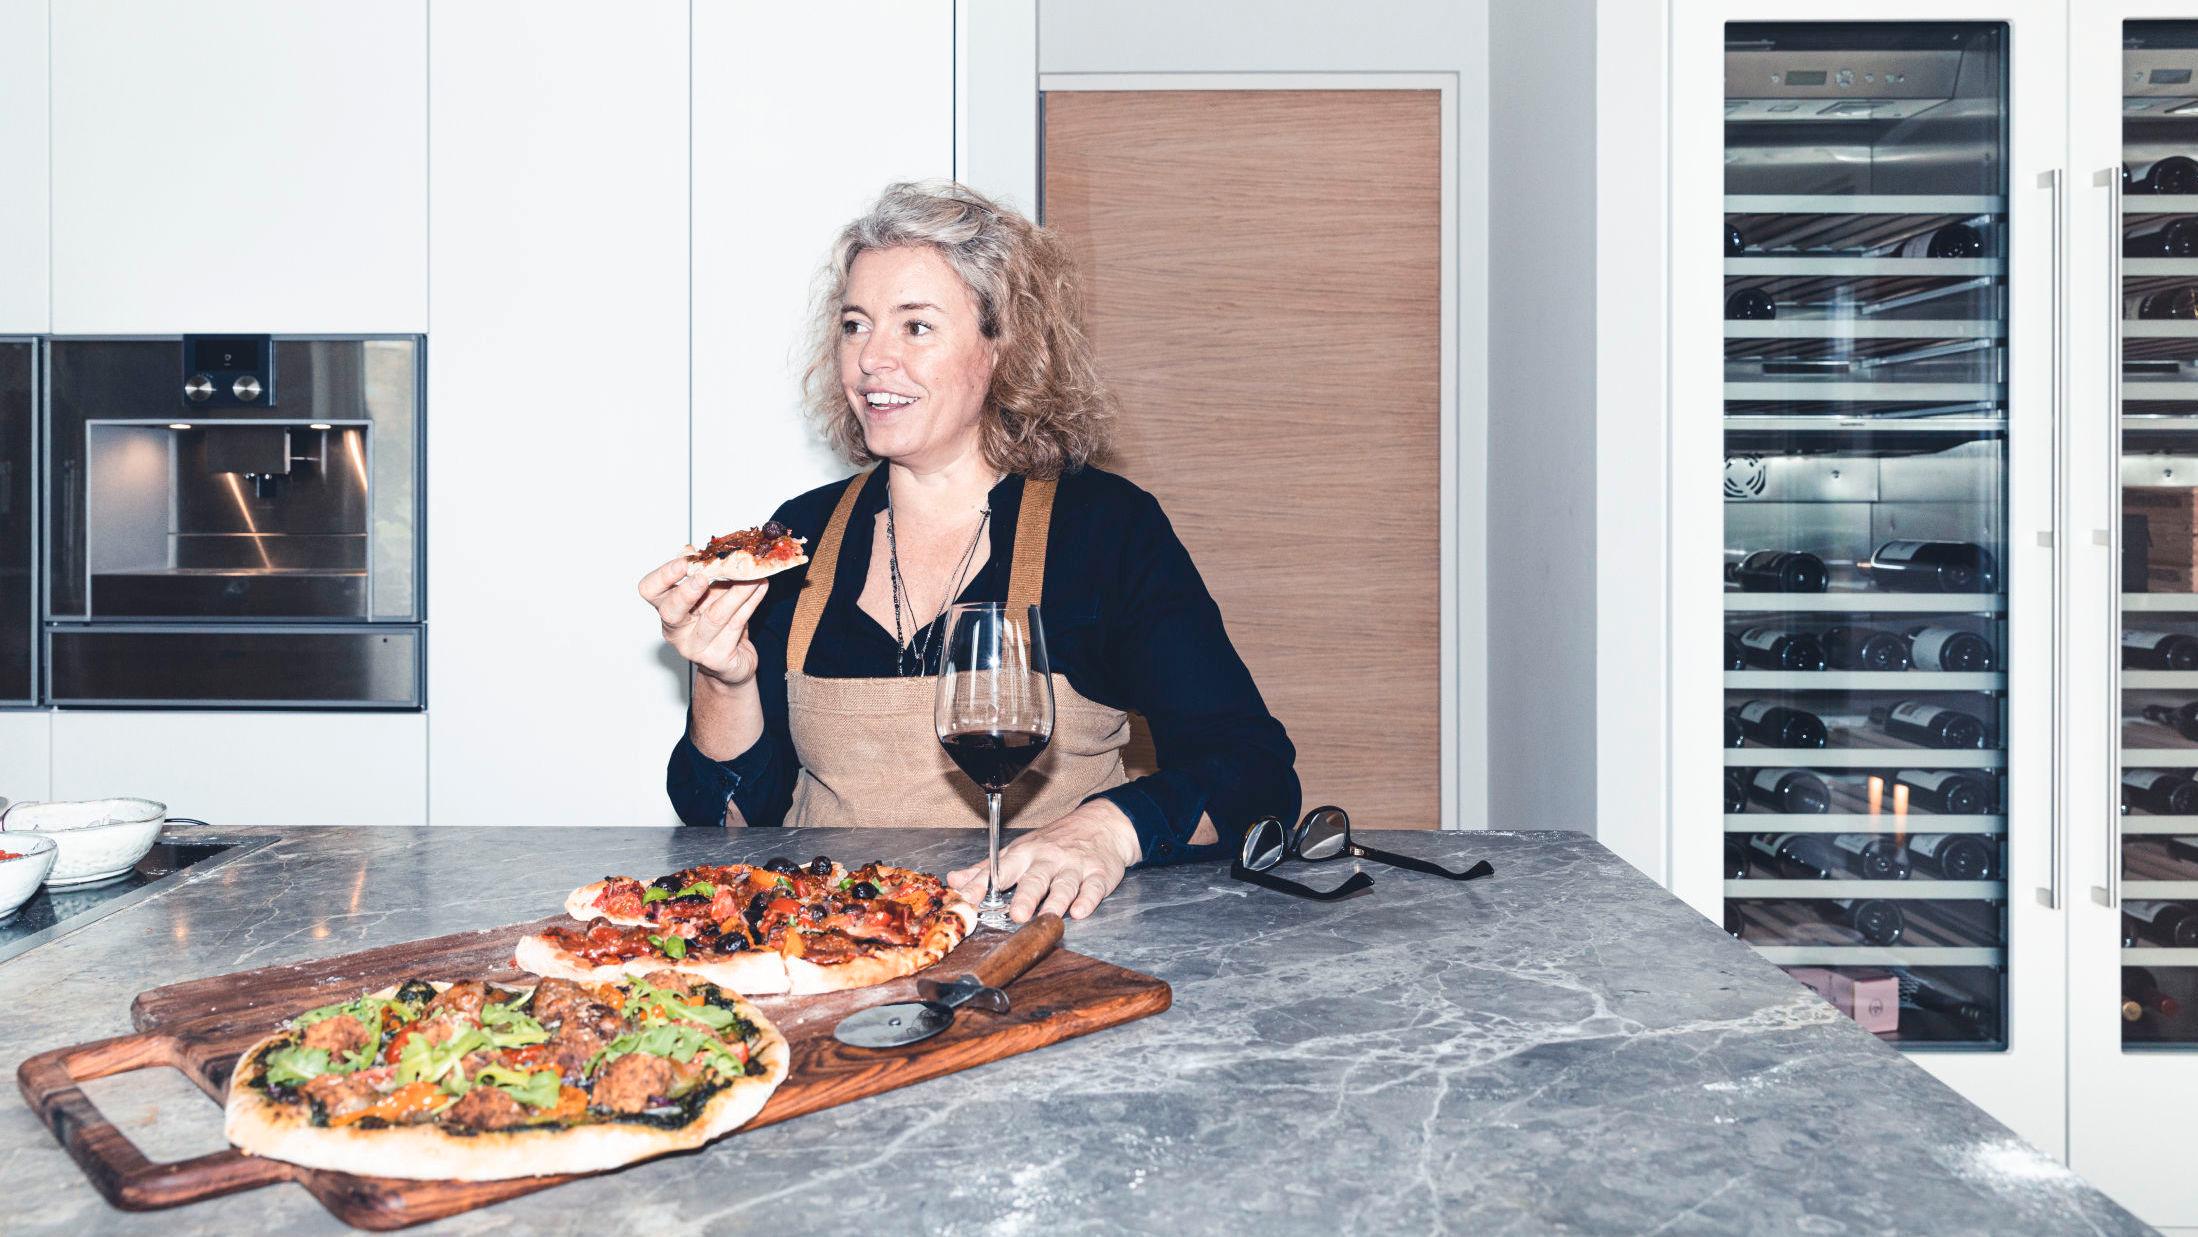 FAST HELGEKOS: Matblogger Ina-Janine Johnsen har oppgradert langpannepizzaen med tynne pizzaer laget på eltefri bunn. Foto: Krister Sørbø